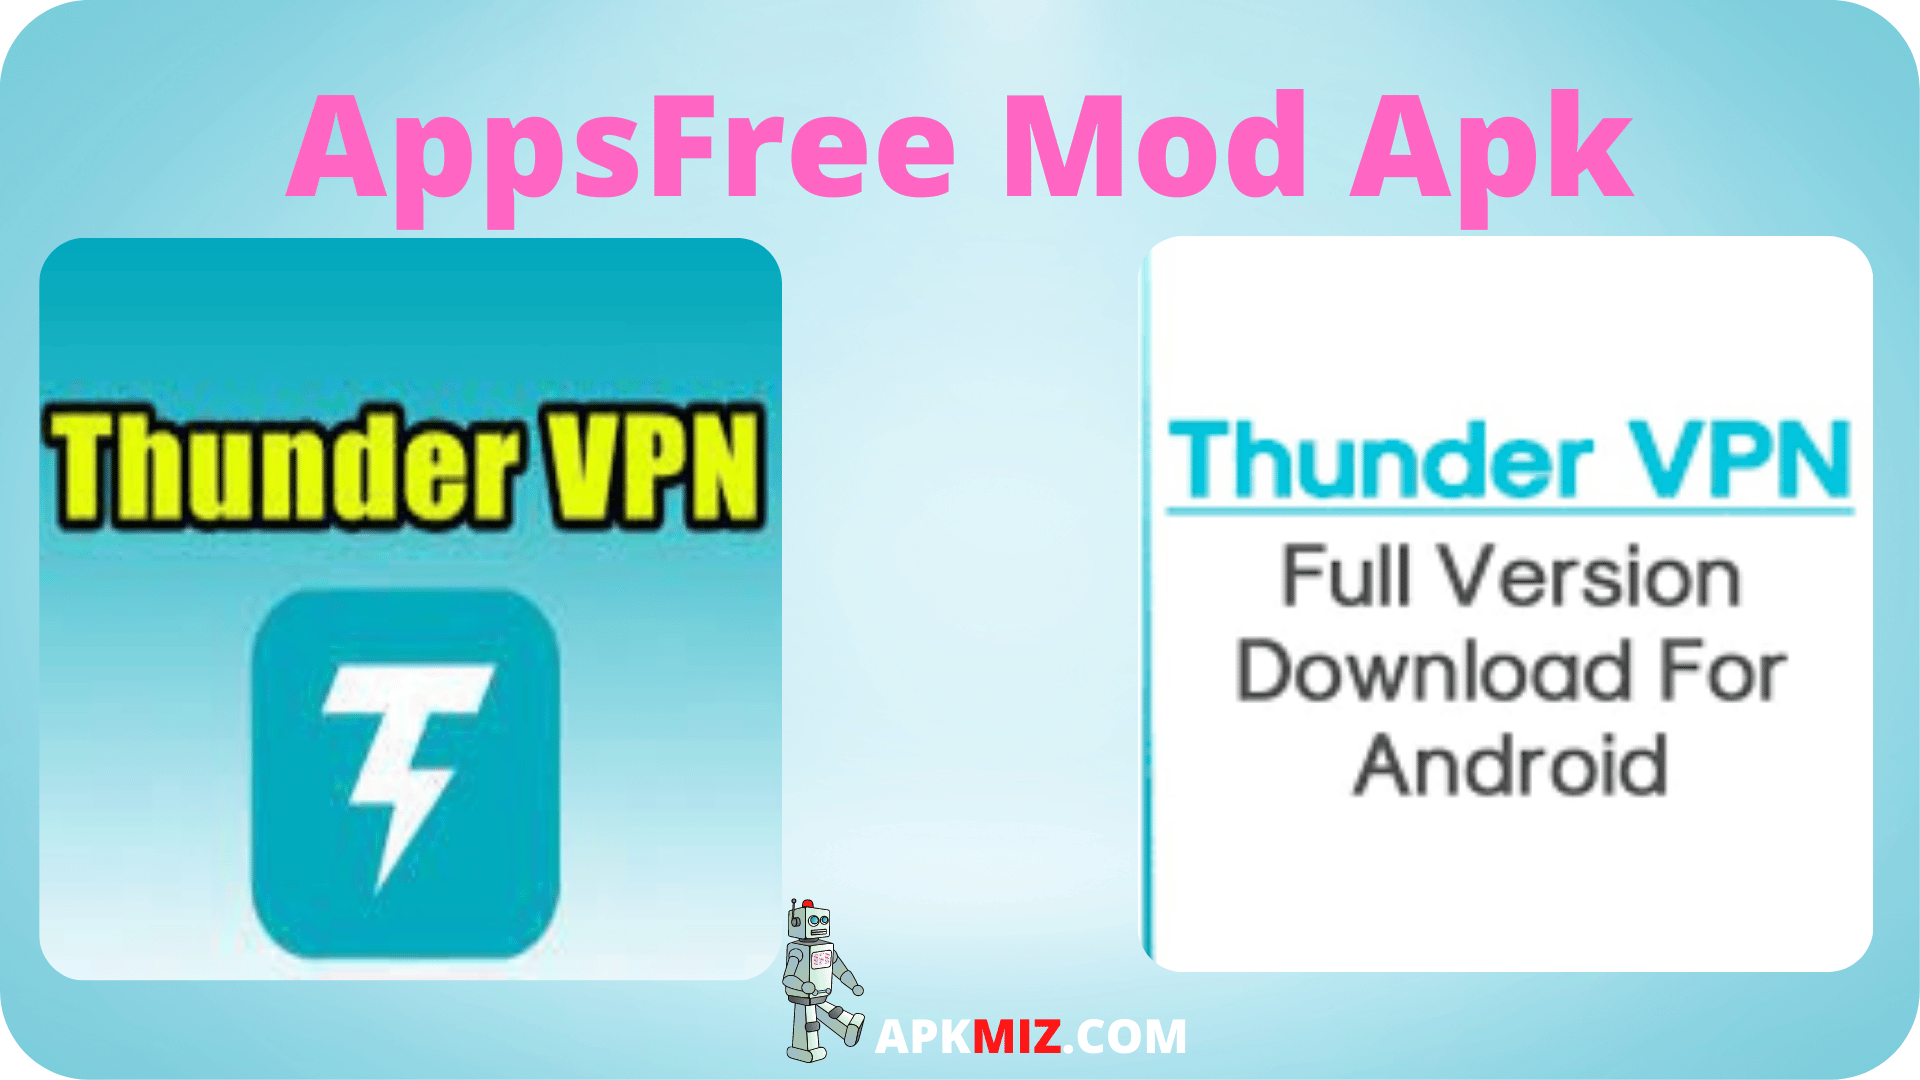 Thunder VPN Mod Apk